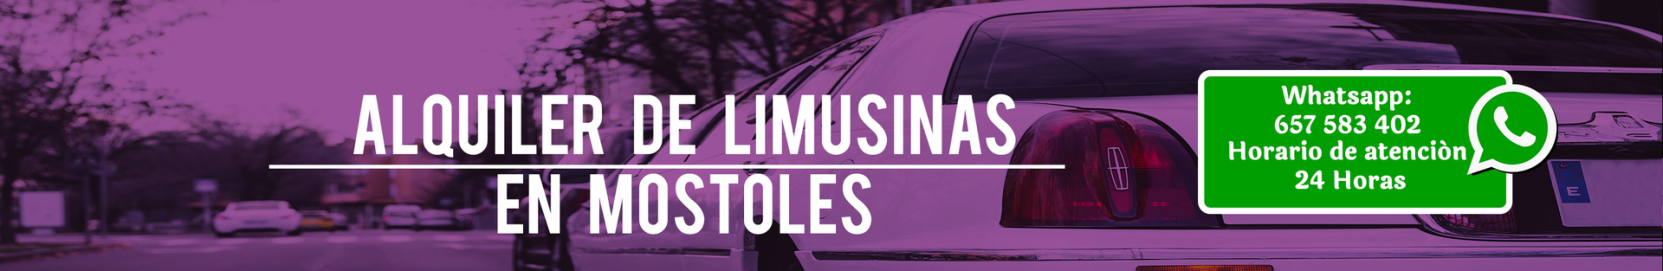 Alquiler de limusinas en Móstoles